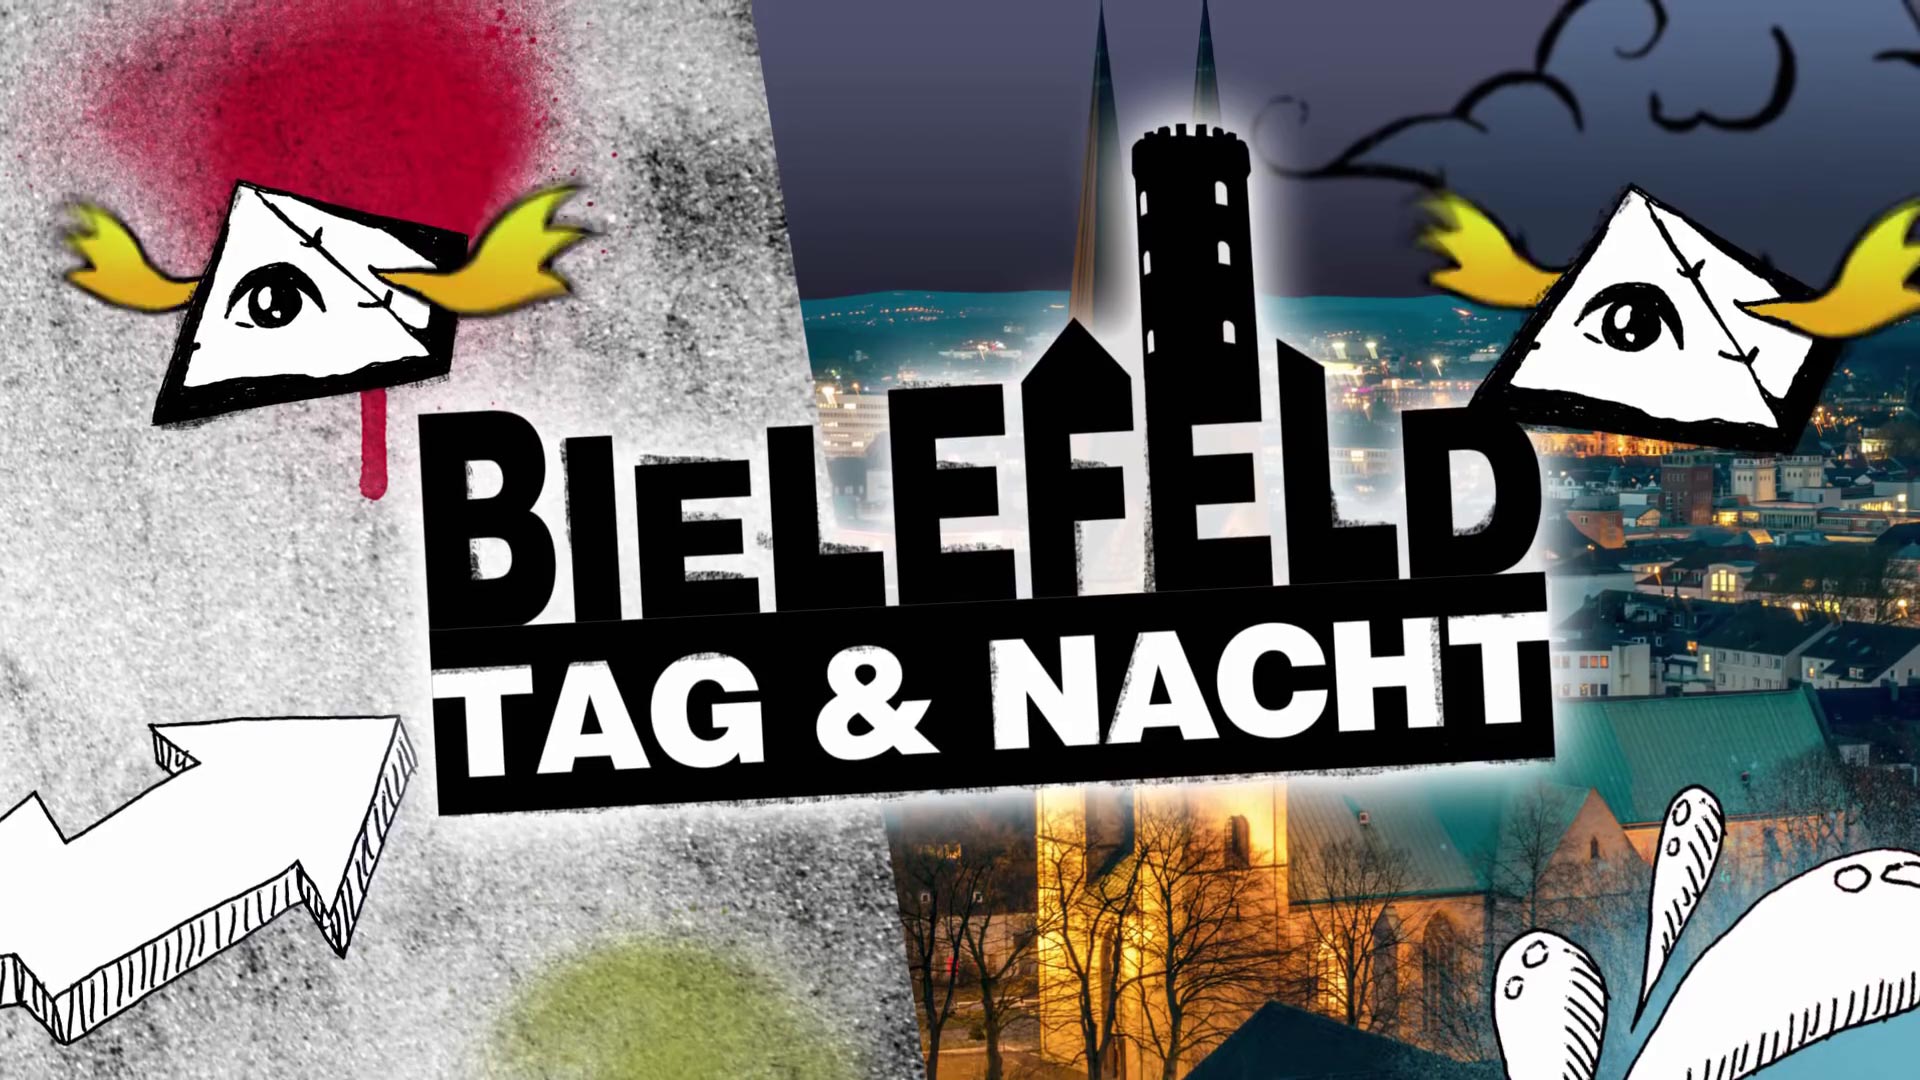 Bielefeld Tag und Nacht, Social-Spot im Auftrag der Bundeszentrale für politische Bildung. Regie Daniel-Hyan, 2018.